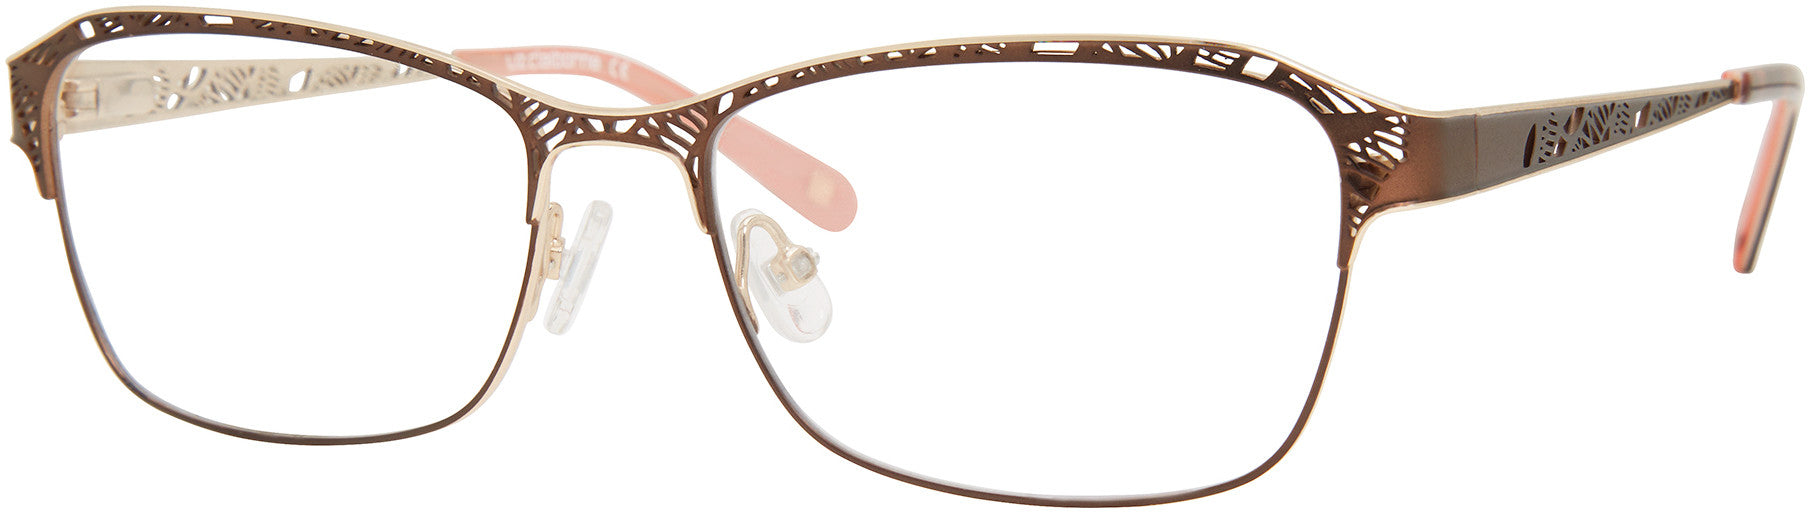  Liz Claiborne 655 Rectangular Eyeglasses 009Q-009Q  Brown (00 Demo Lens)